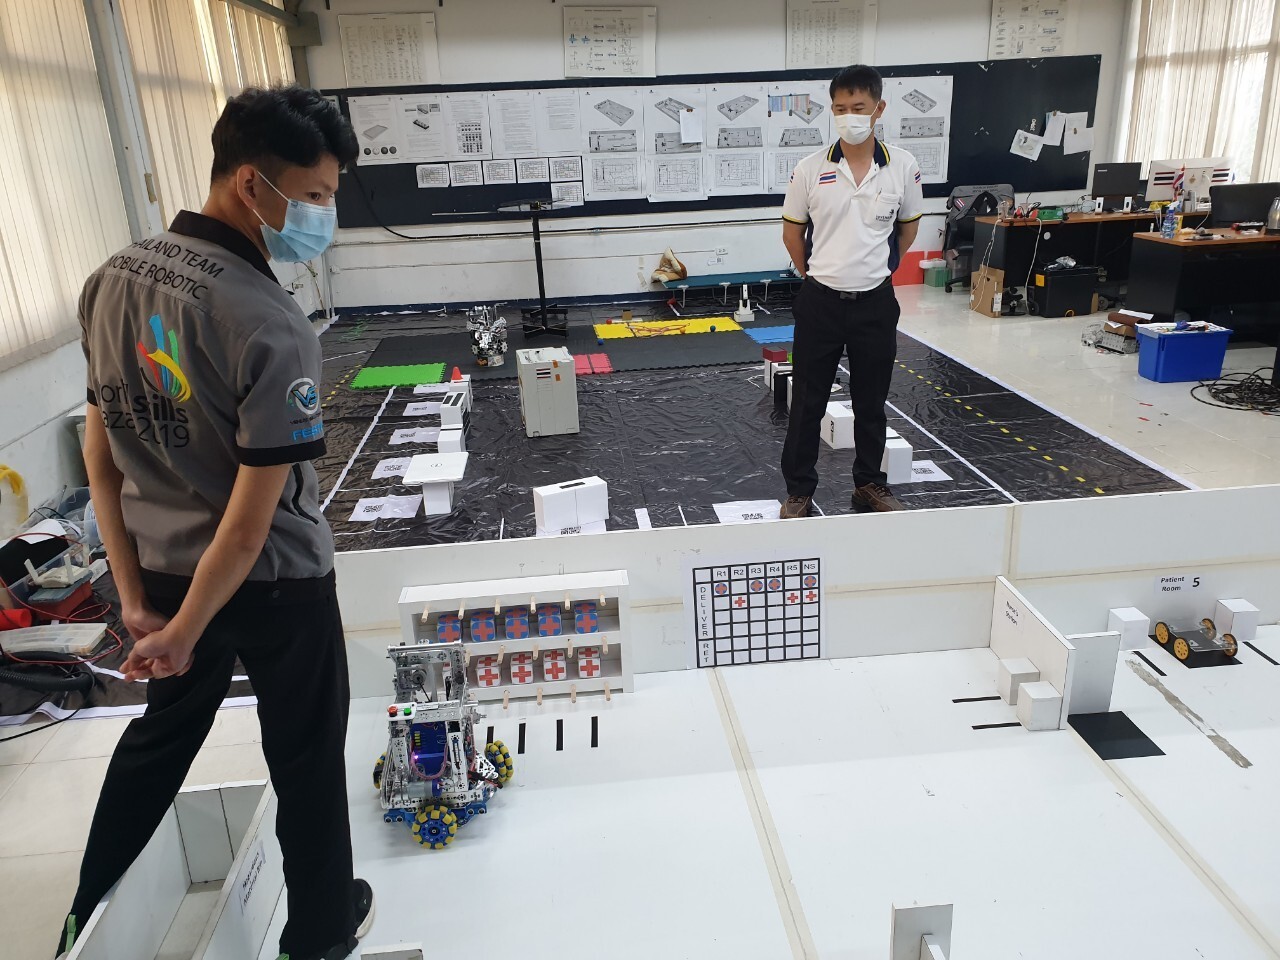 สองหนุ่มราชมงคลล้านนาตัวแทนประเทศไทย ฝ่าด่านภารกิจสุดหิน การแข่งขันหุ่นยนต์เคลื่อนที่ คว้าอันดับ 3 เวที World Skills Asia Online Friendly Skills Game 2021